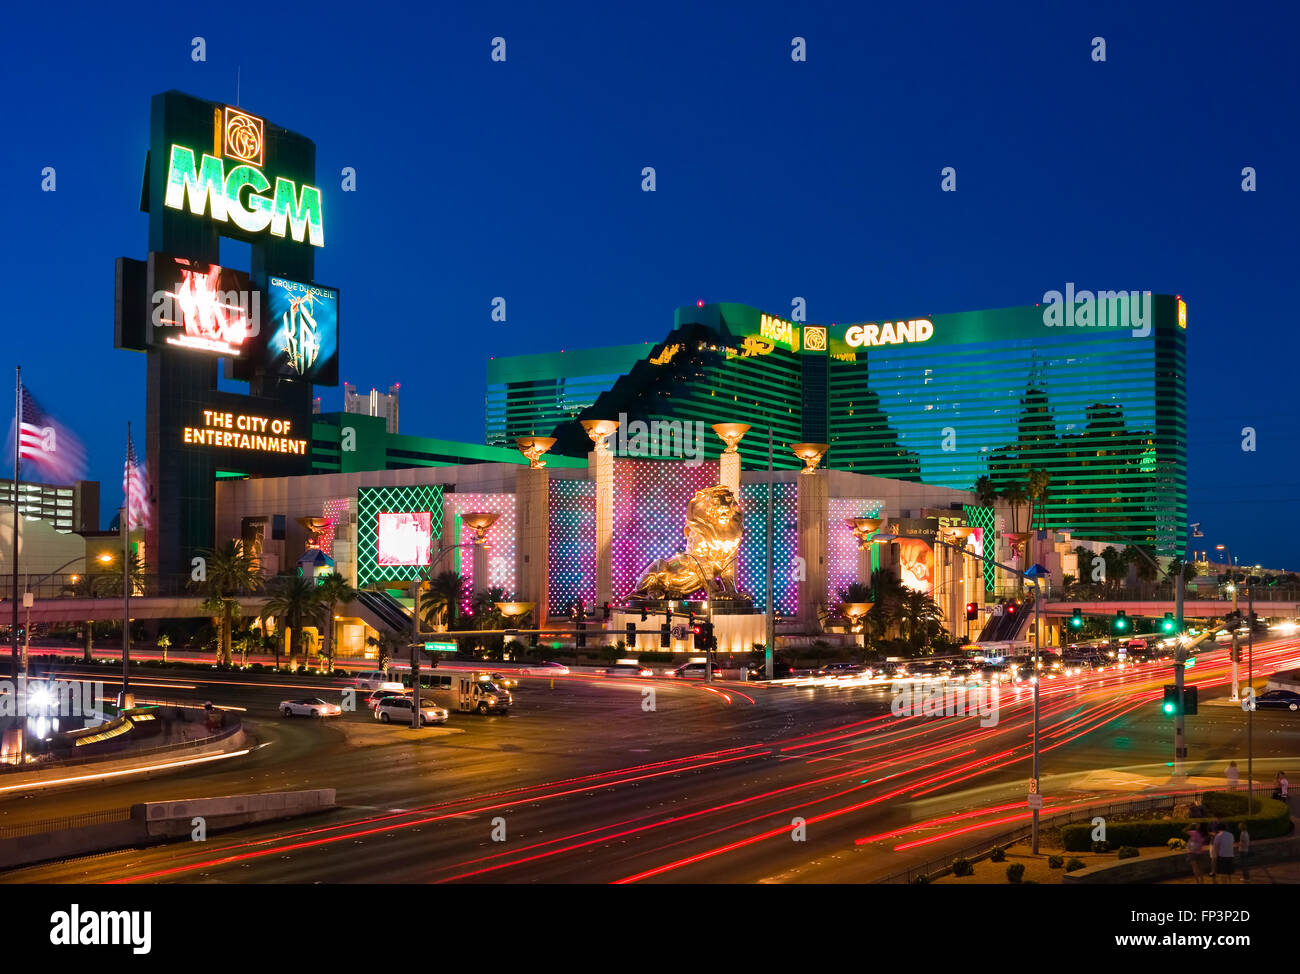 El MGM Grand Hotel y Casino en Las Vegas por la noche Foto de stock